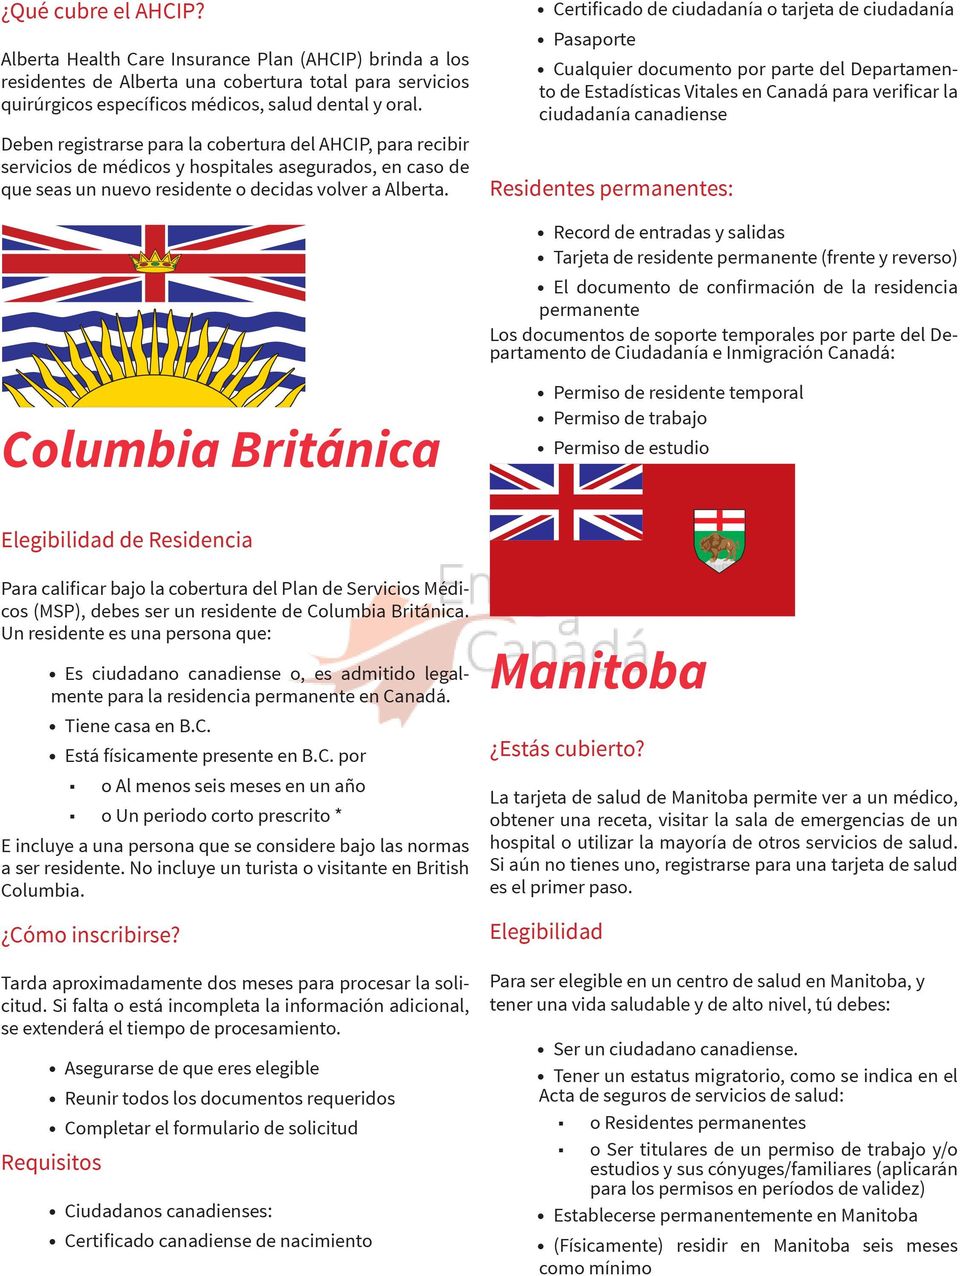 Certificado de ciudadanía o tarjeta de ciudadanía Pasaporte Cualquier documento por parte del Departamento de Estadísticas Vitales en Canadá para verificar la ciudadanía canadiense Residentes